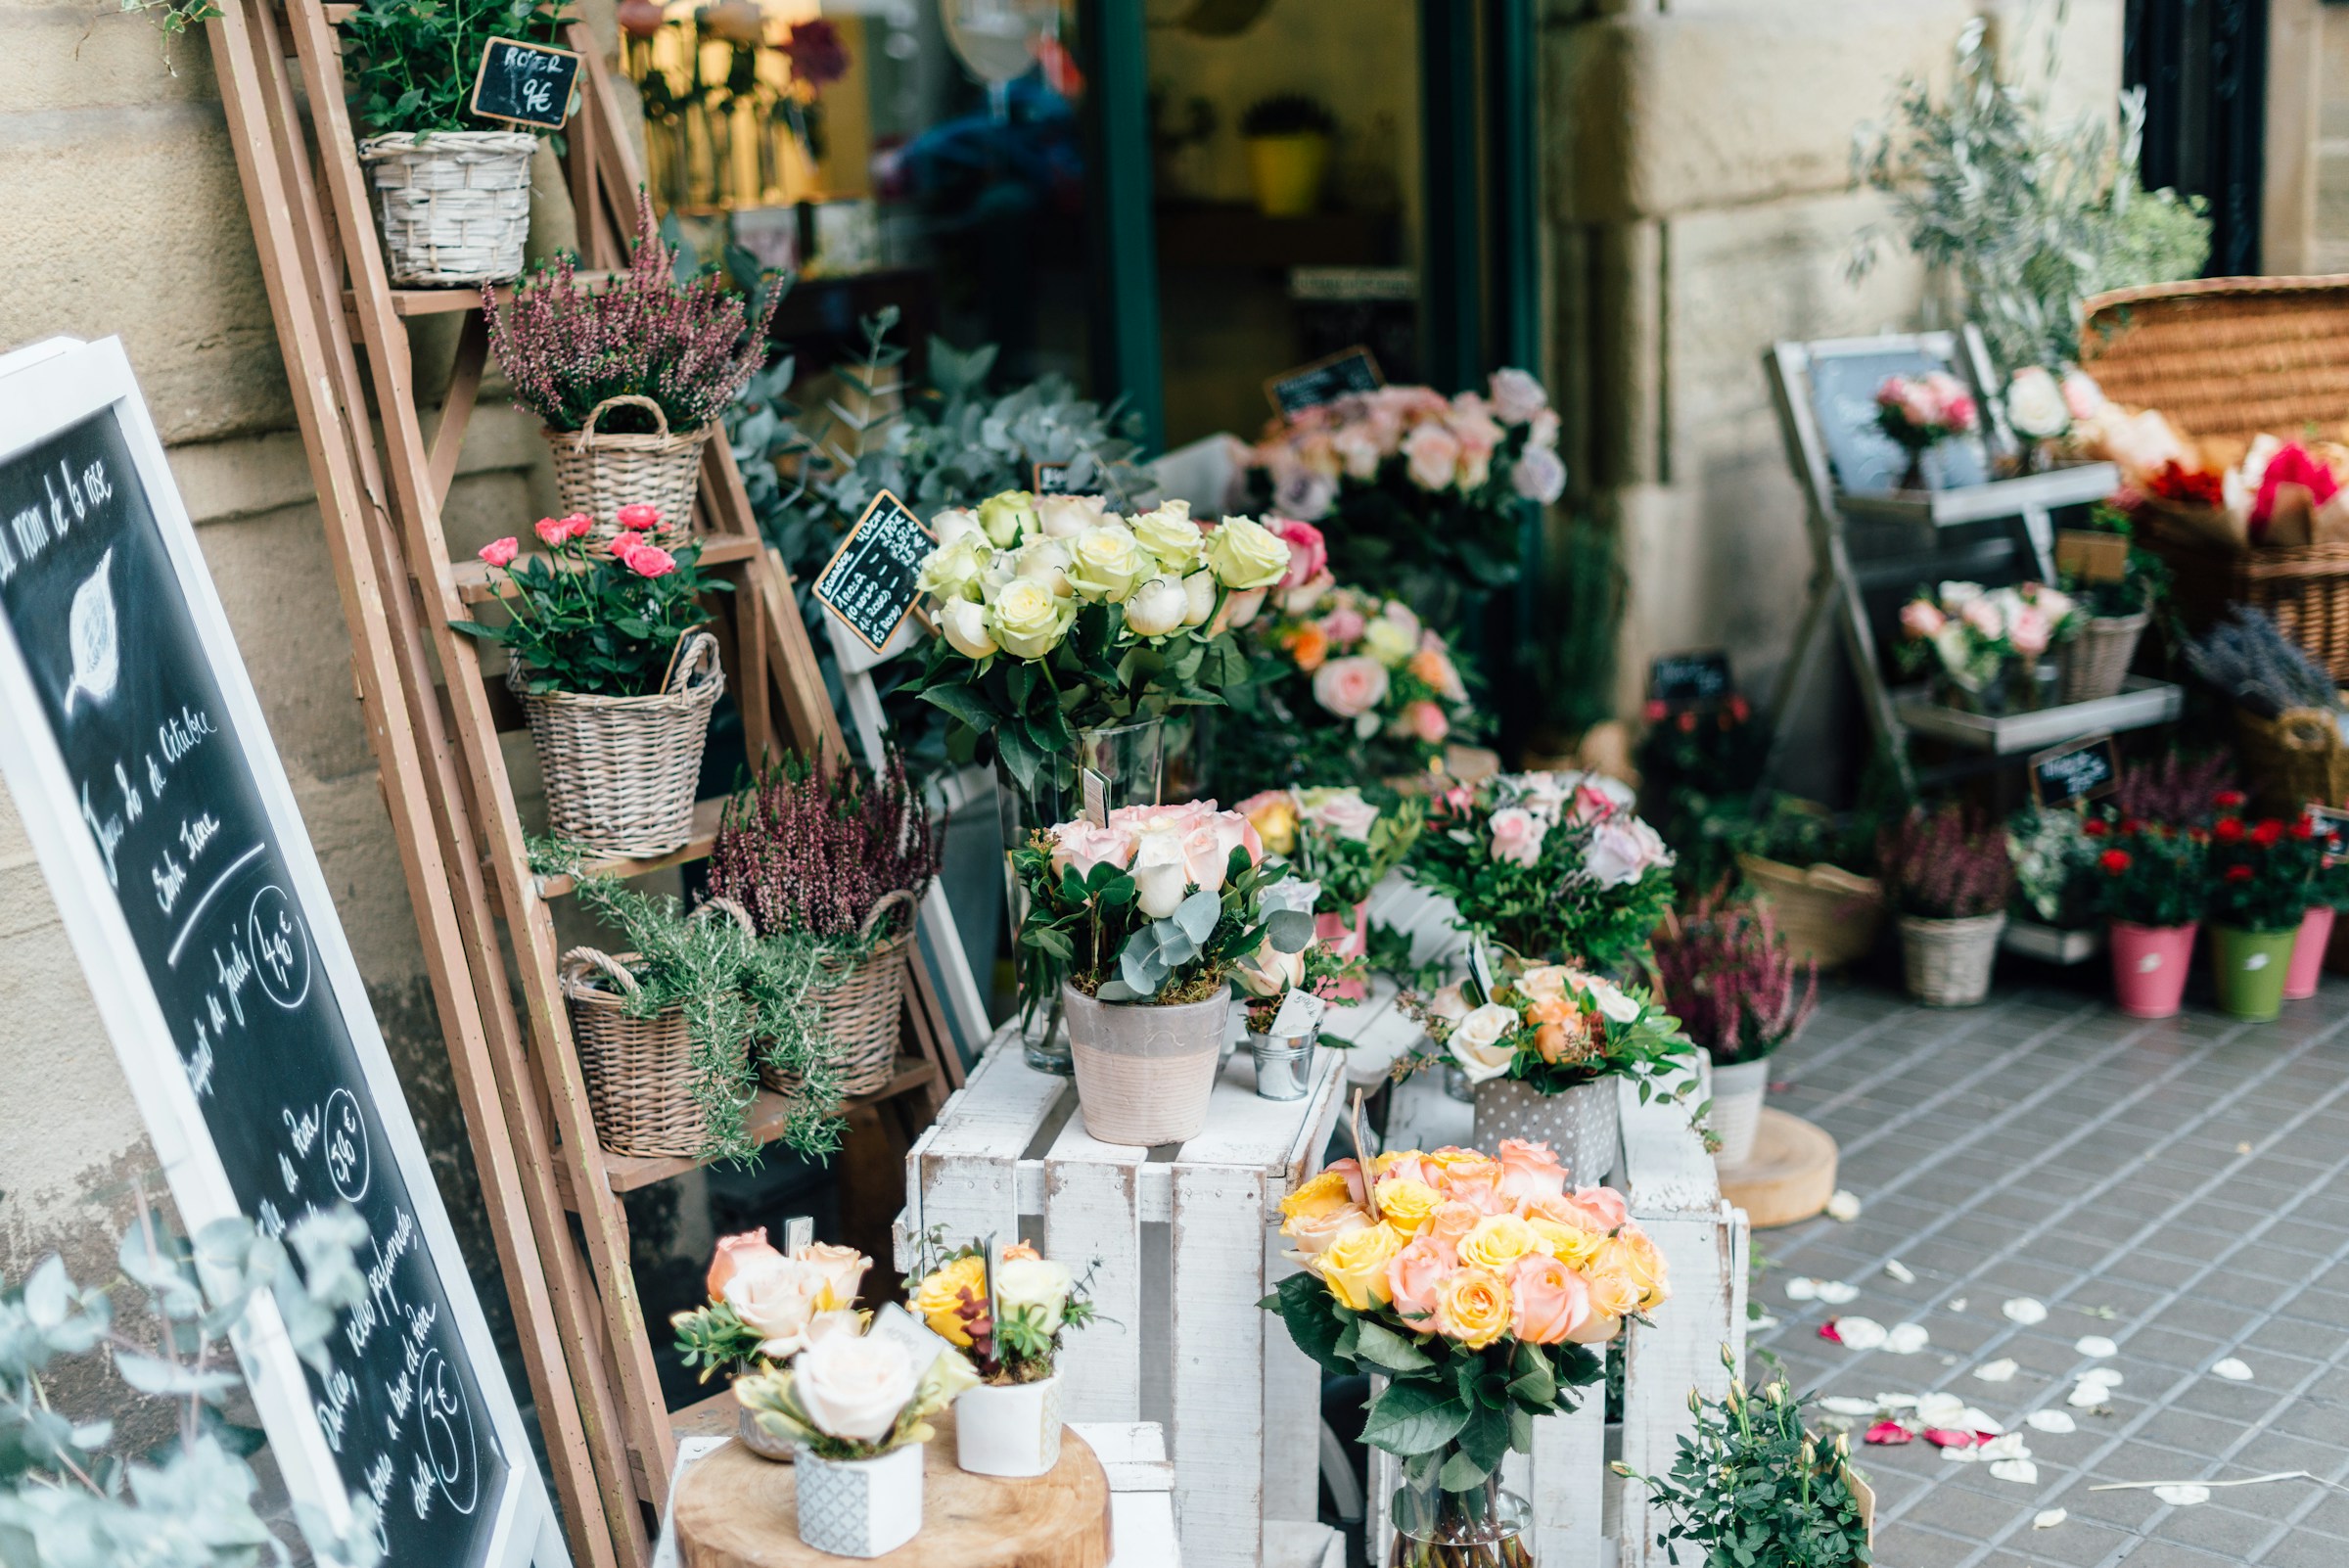 Un magasin de fleurs | Source : Unsplash